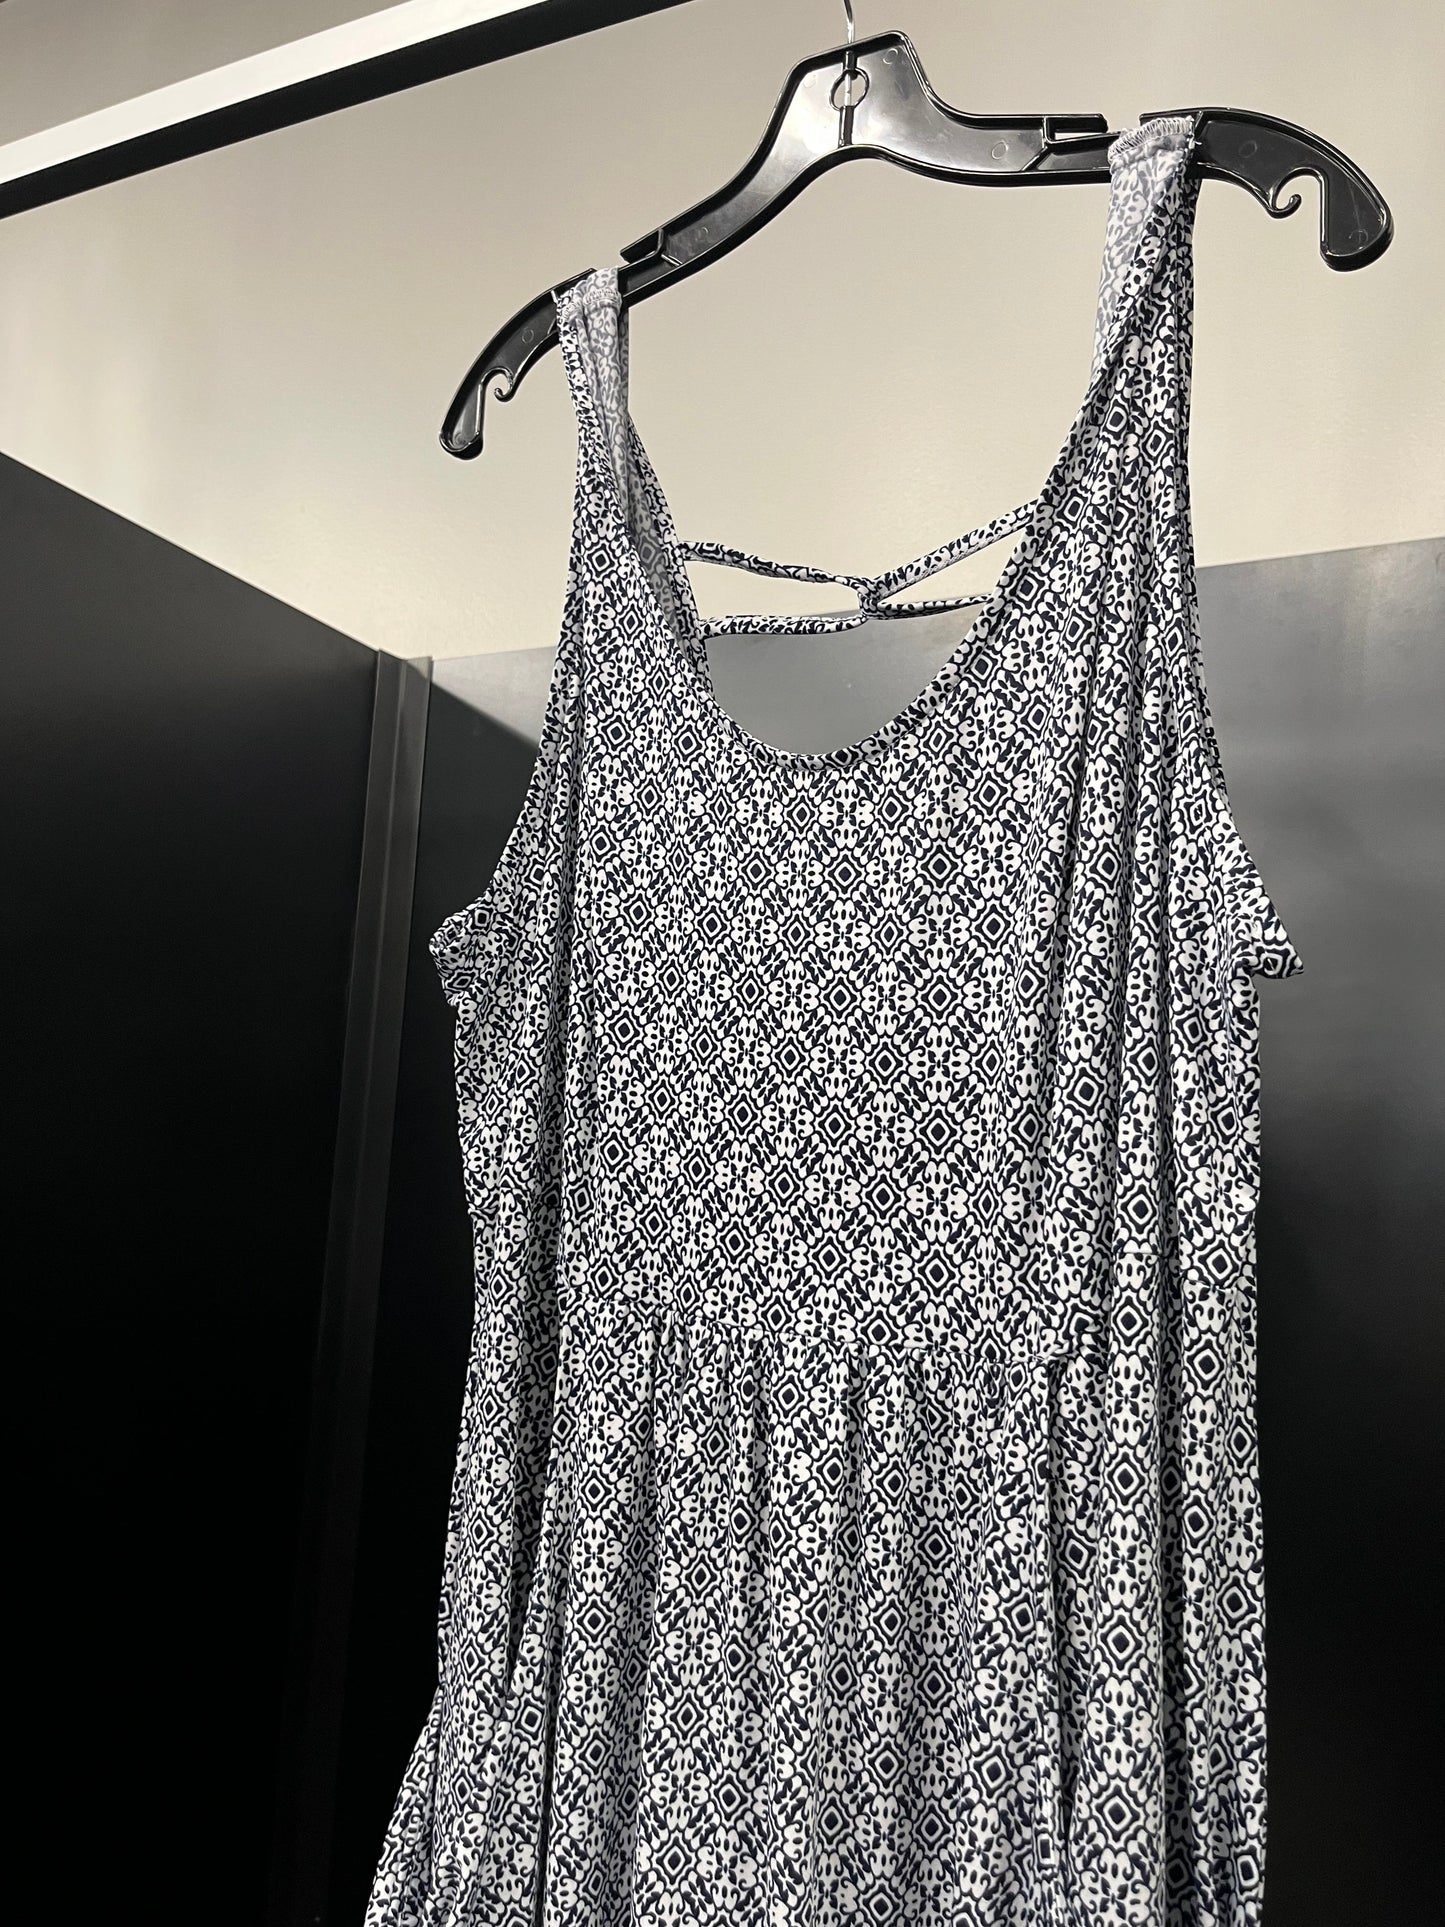 Dress Casual Midi By Apt 9 NWT  Size: 2x